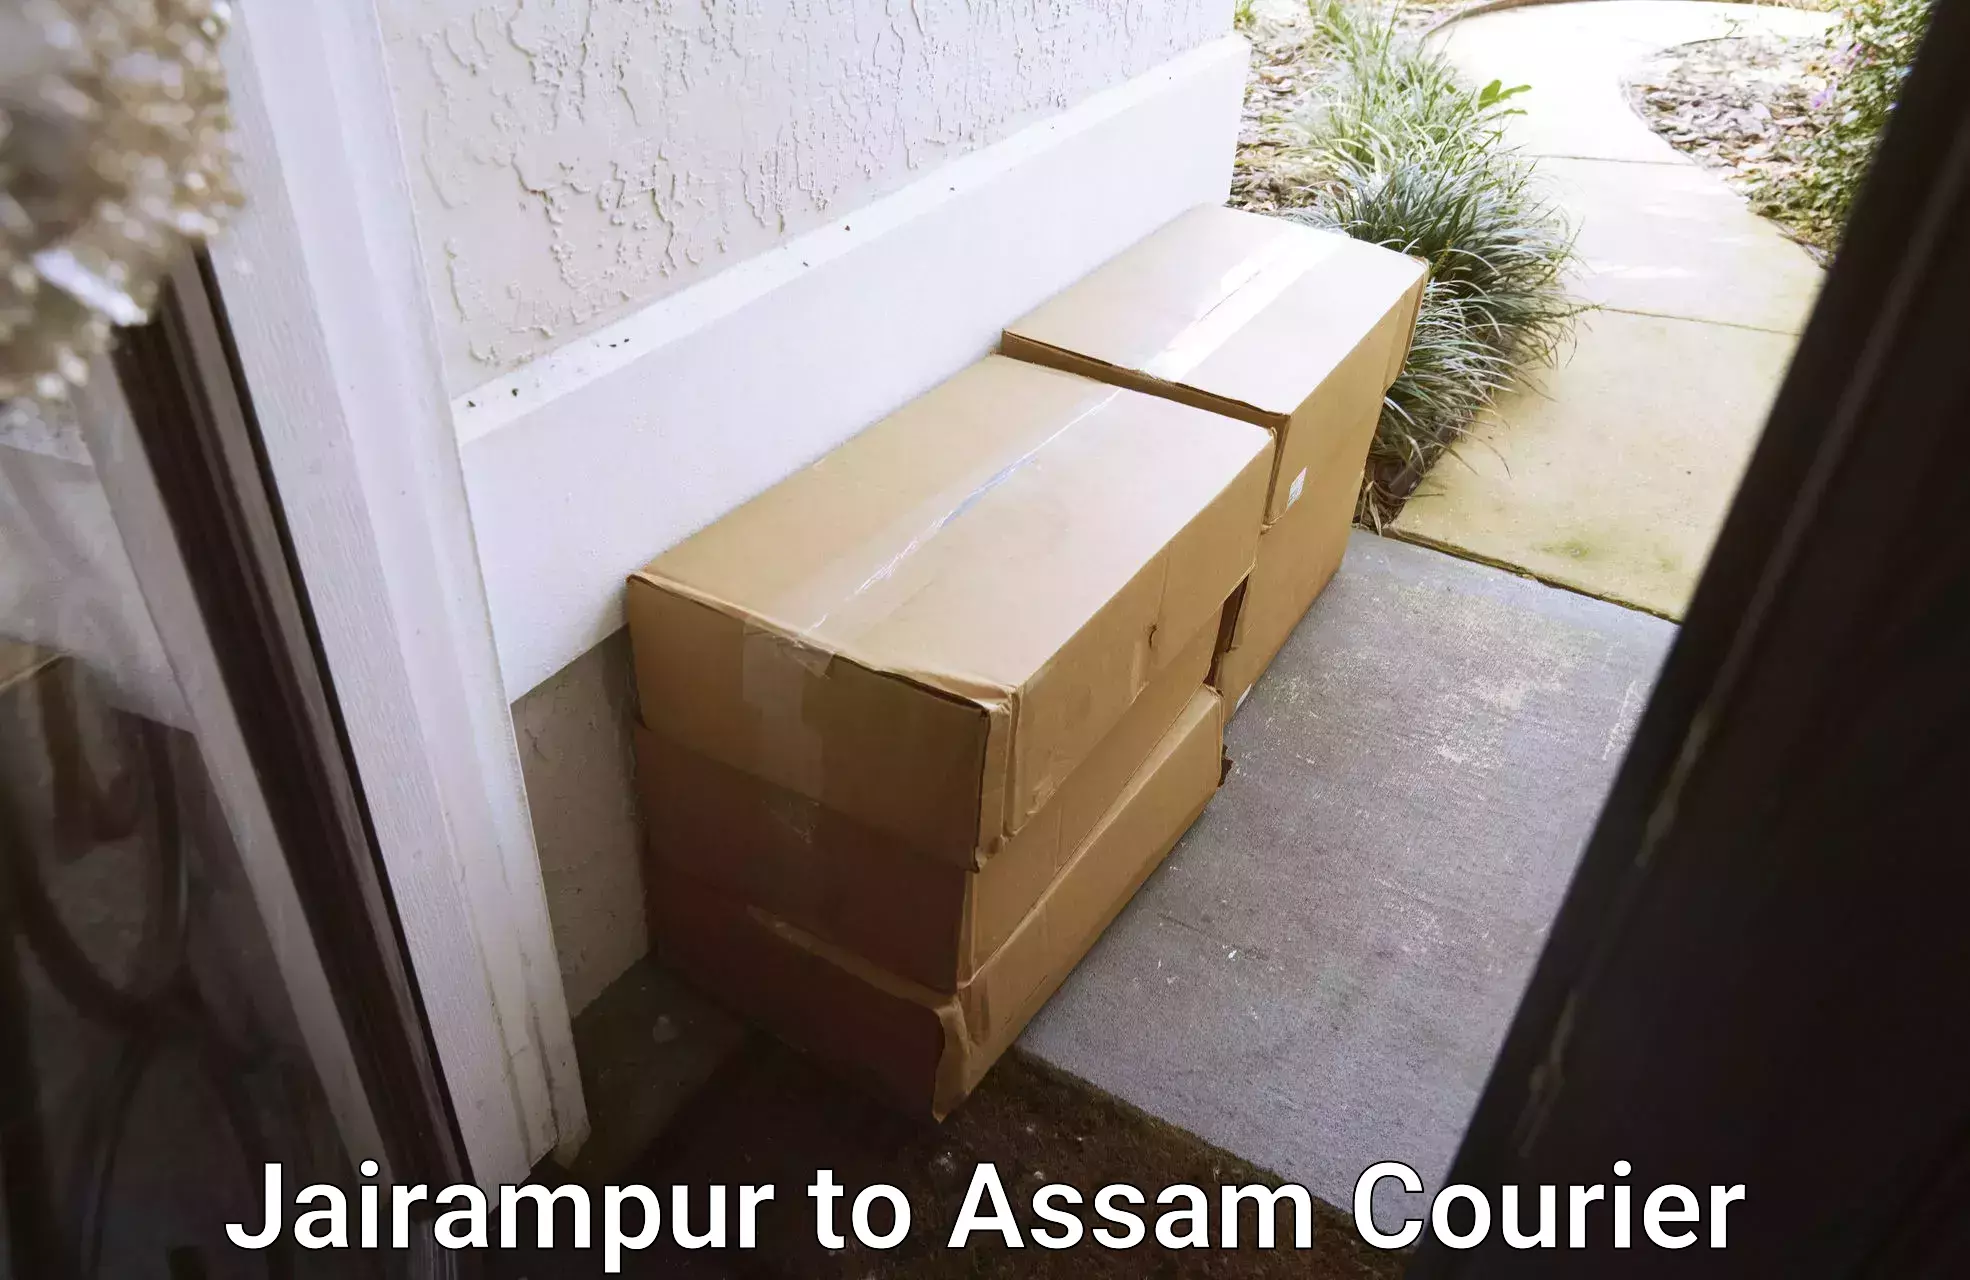 Premium courier solutions Jairampur to Chariduar